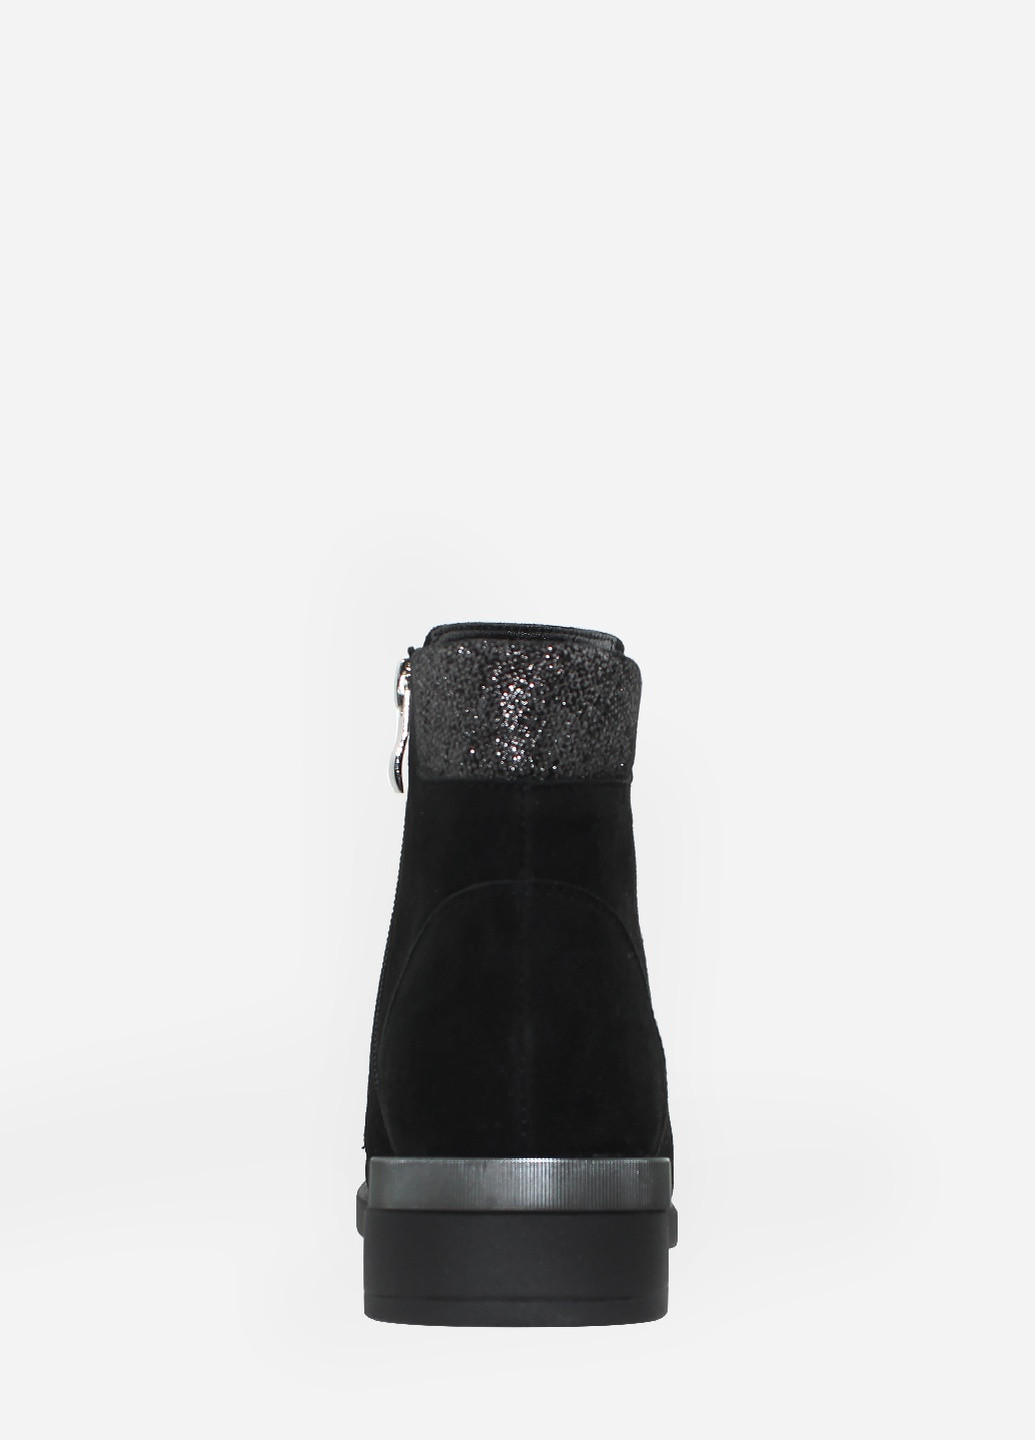 Осенние ботинки rd813-11 черный Digsi из натуральной замши